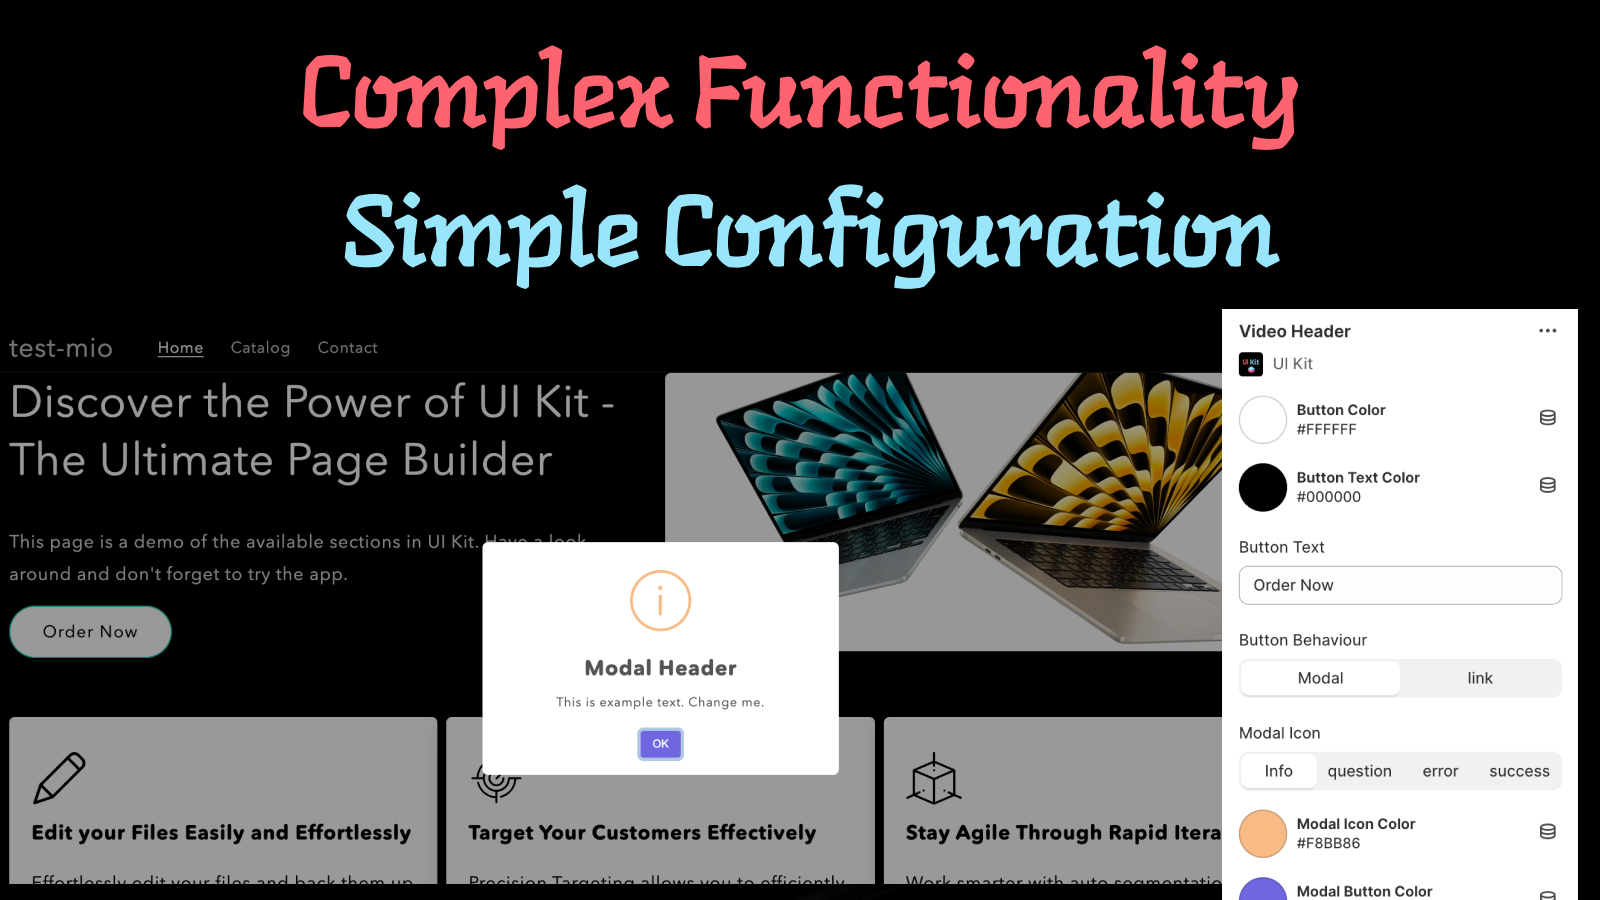 funcionalidad-compleja-configuración-simple-ui-kit-shopify